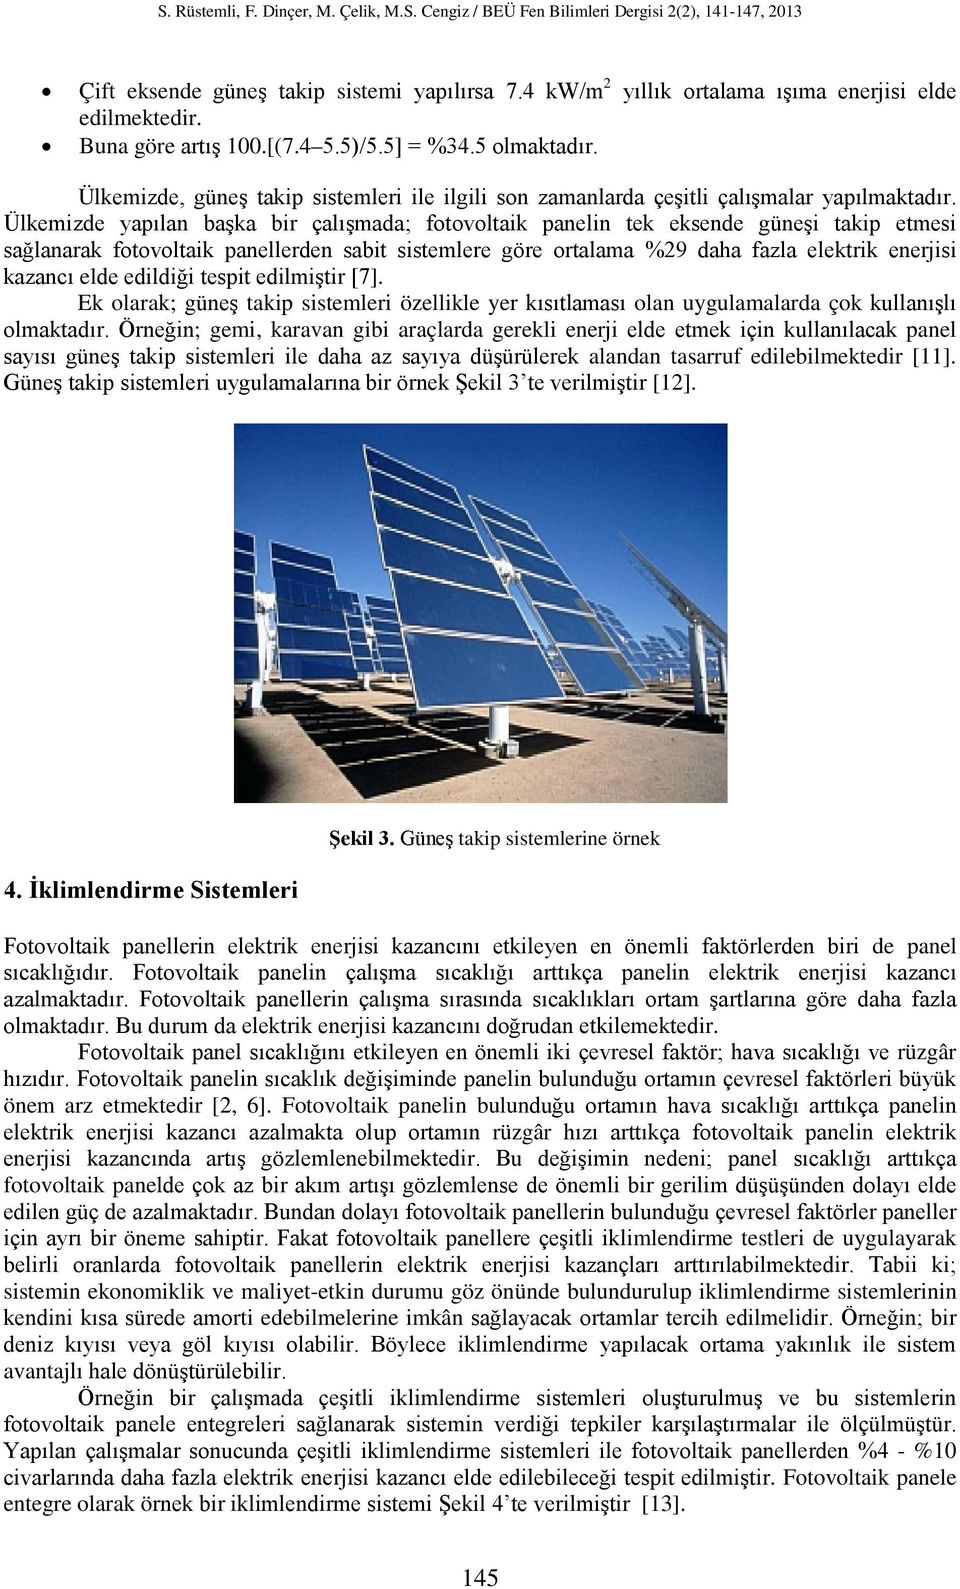 Ülkemizde yapılan başka bir çalışmada; fotovoltaik panelin tek eksende güneşi takip etmesi sağlanarak fotovoltaik panellerden sabit sistemlere göre ortalama %29 daha fazla elektrik enerjisi kazancı